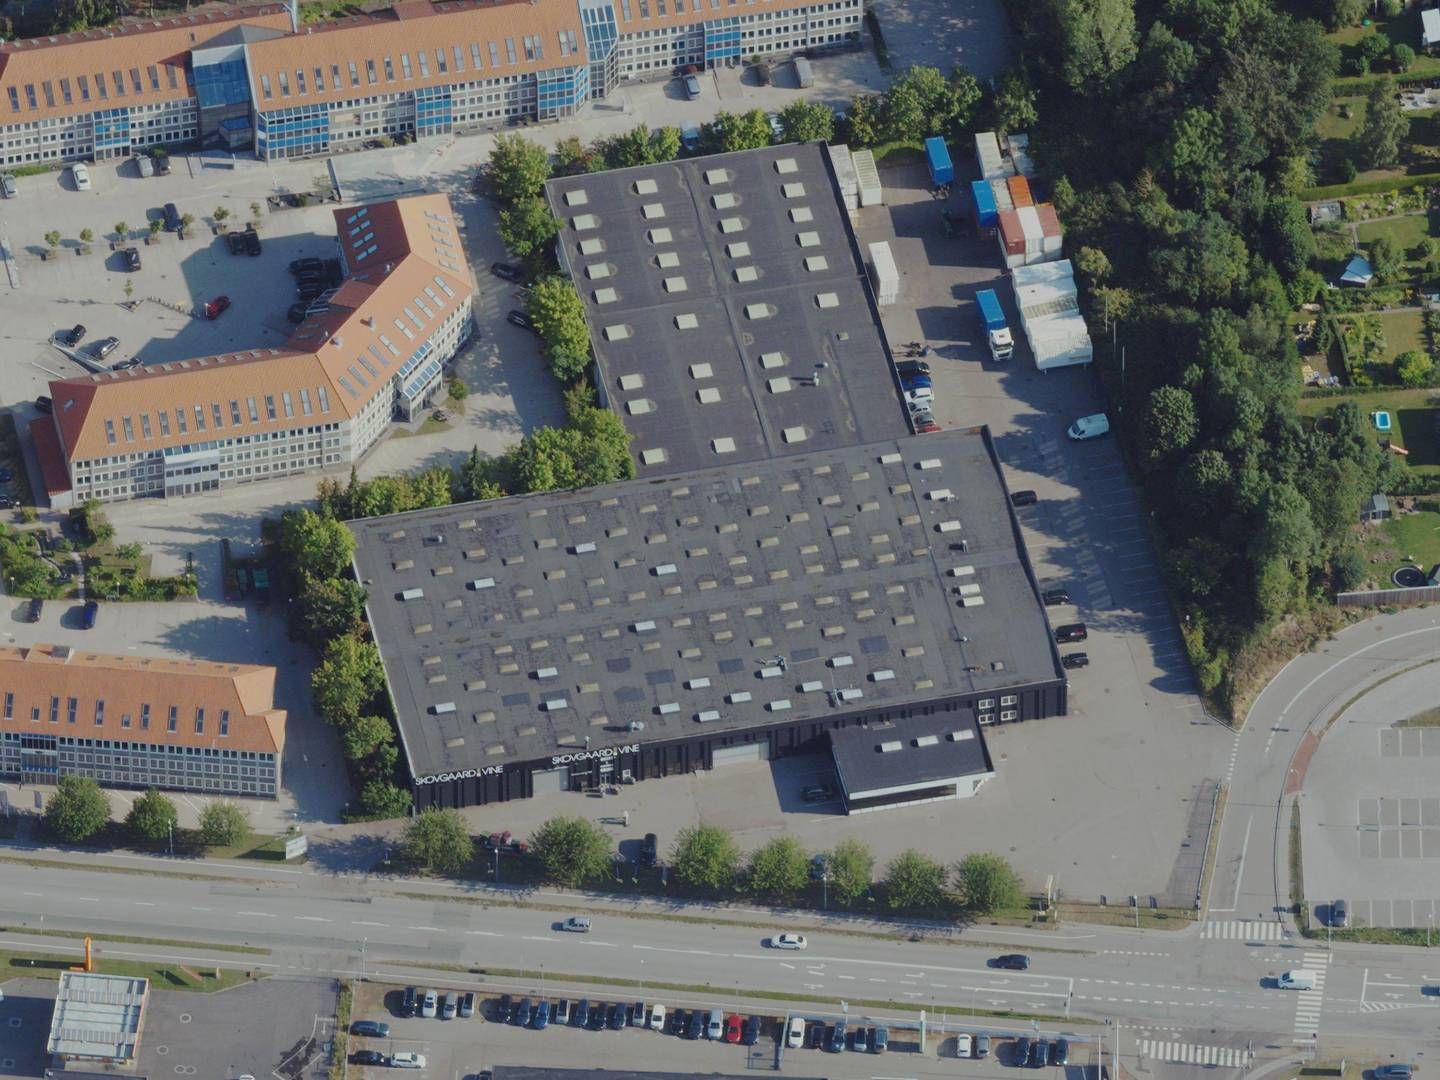 Logistikejendommen på Vallensbækvej 6 er placeret i Brøndby på den københavnske vestegn lige ved Søndre Ringvej og Holbækmotorvejen. | Foto: Styrelsen for Dataforsyning og Effektivisering